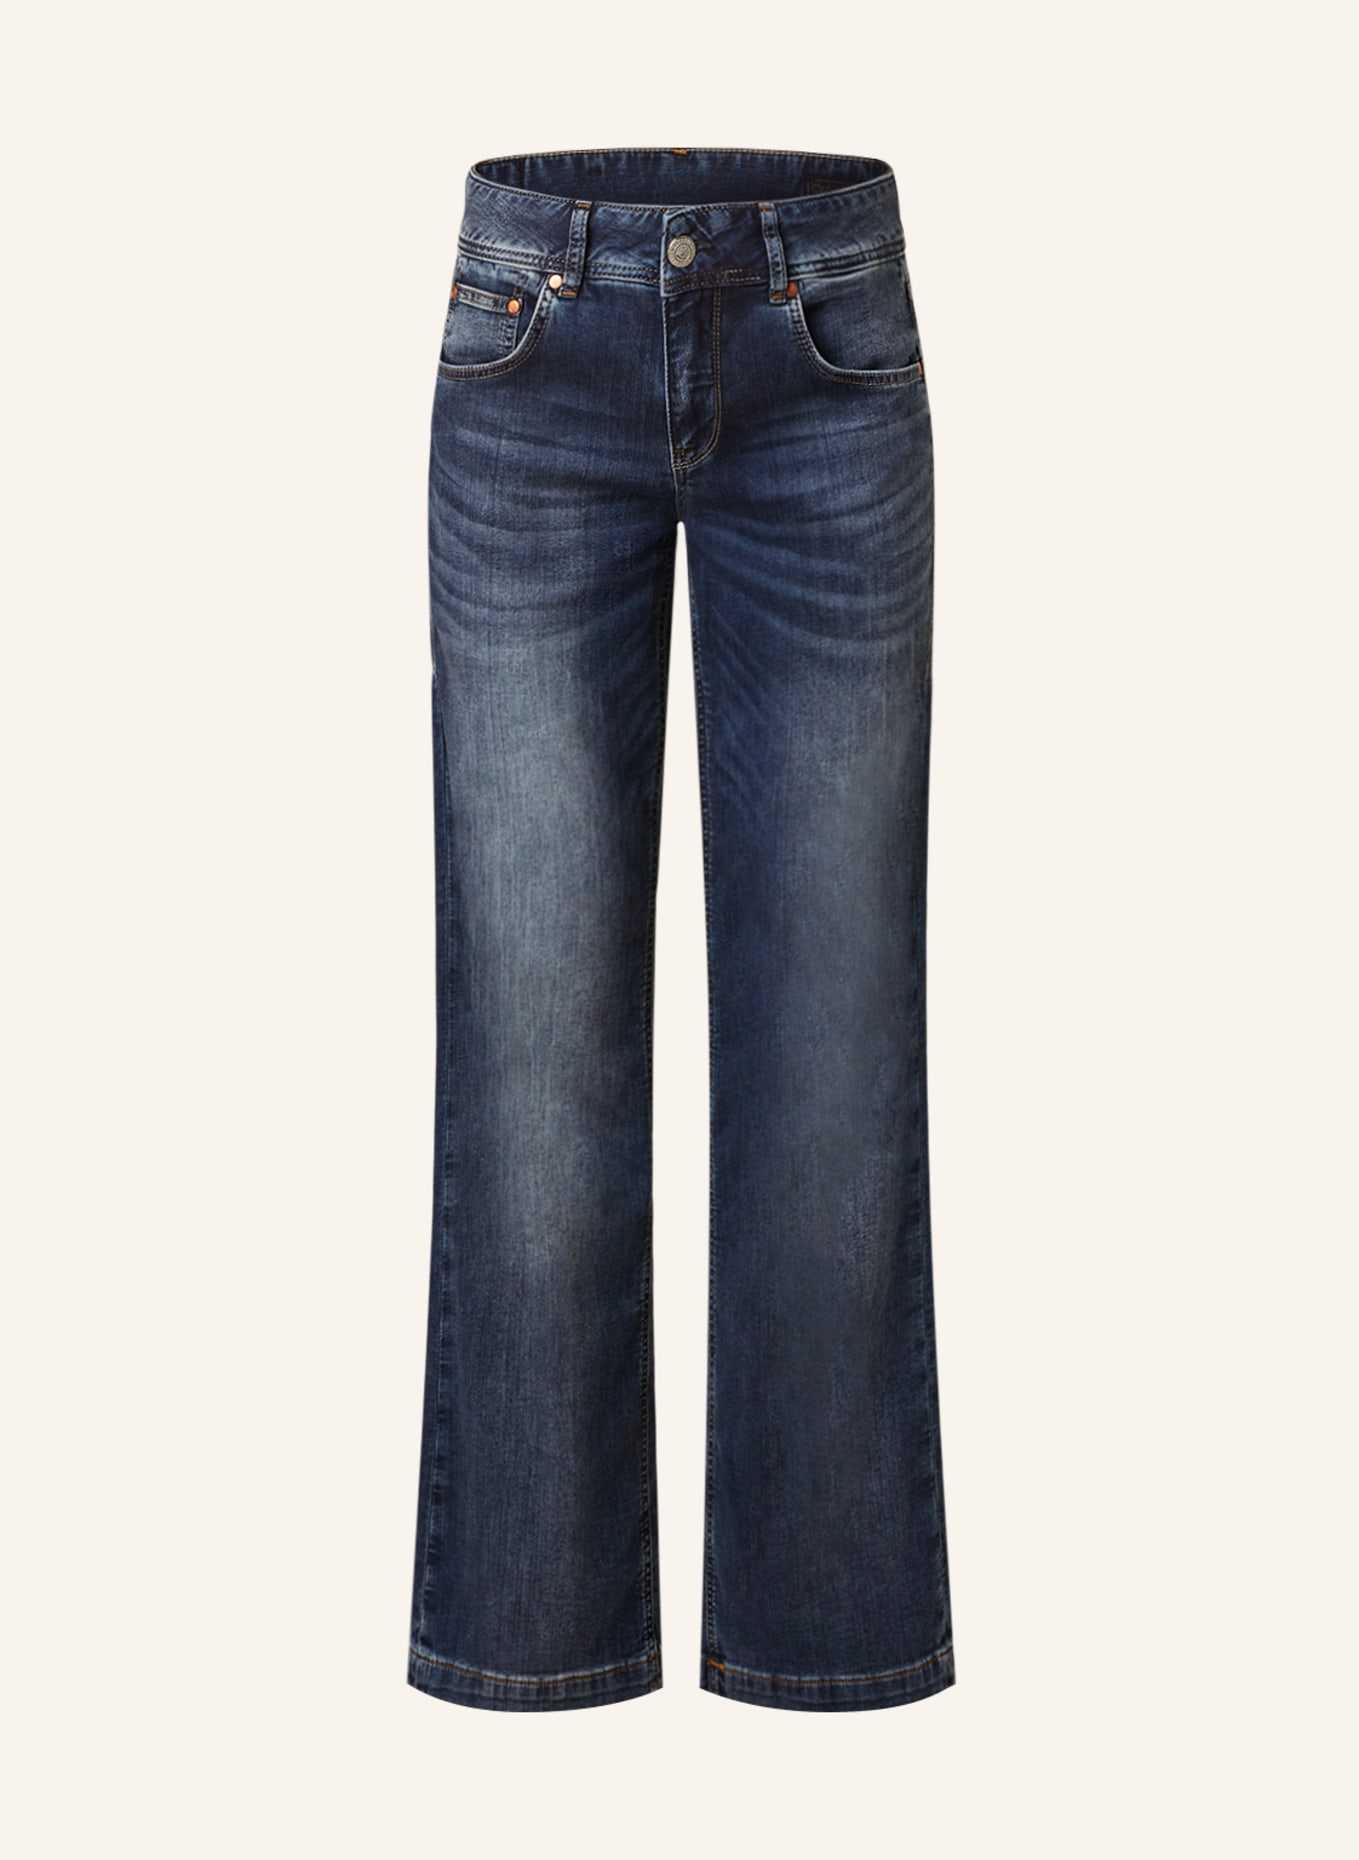 Herrlicher Flared Jeans EDNA, Farbe: 771 releaxed (Bild 1)